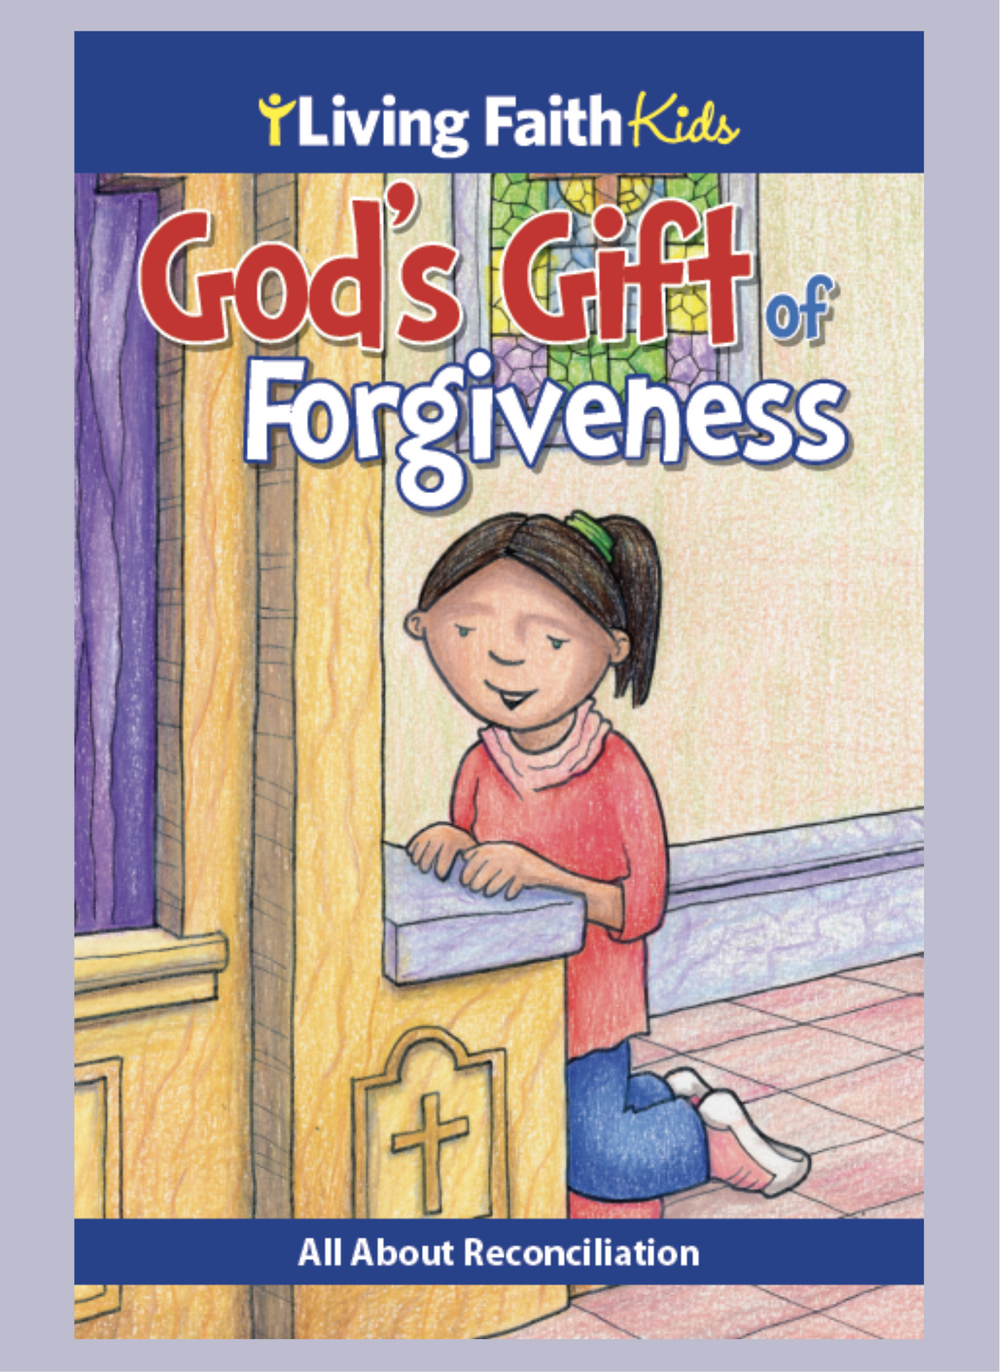 God's gift of forgiveness